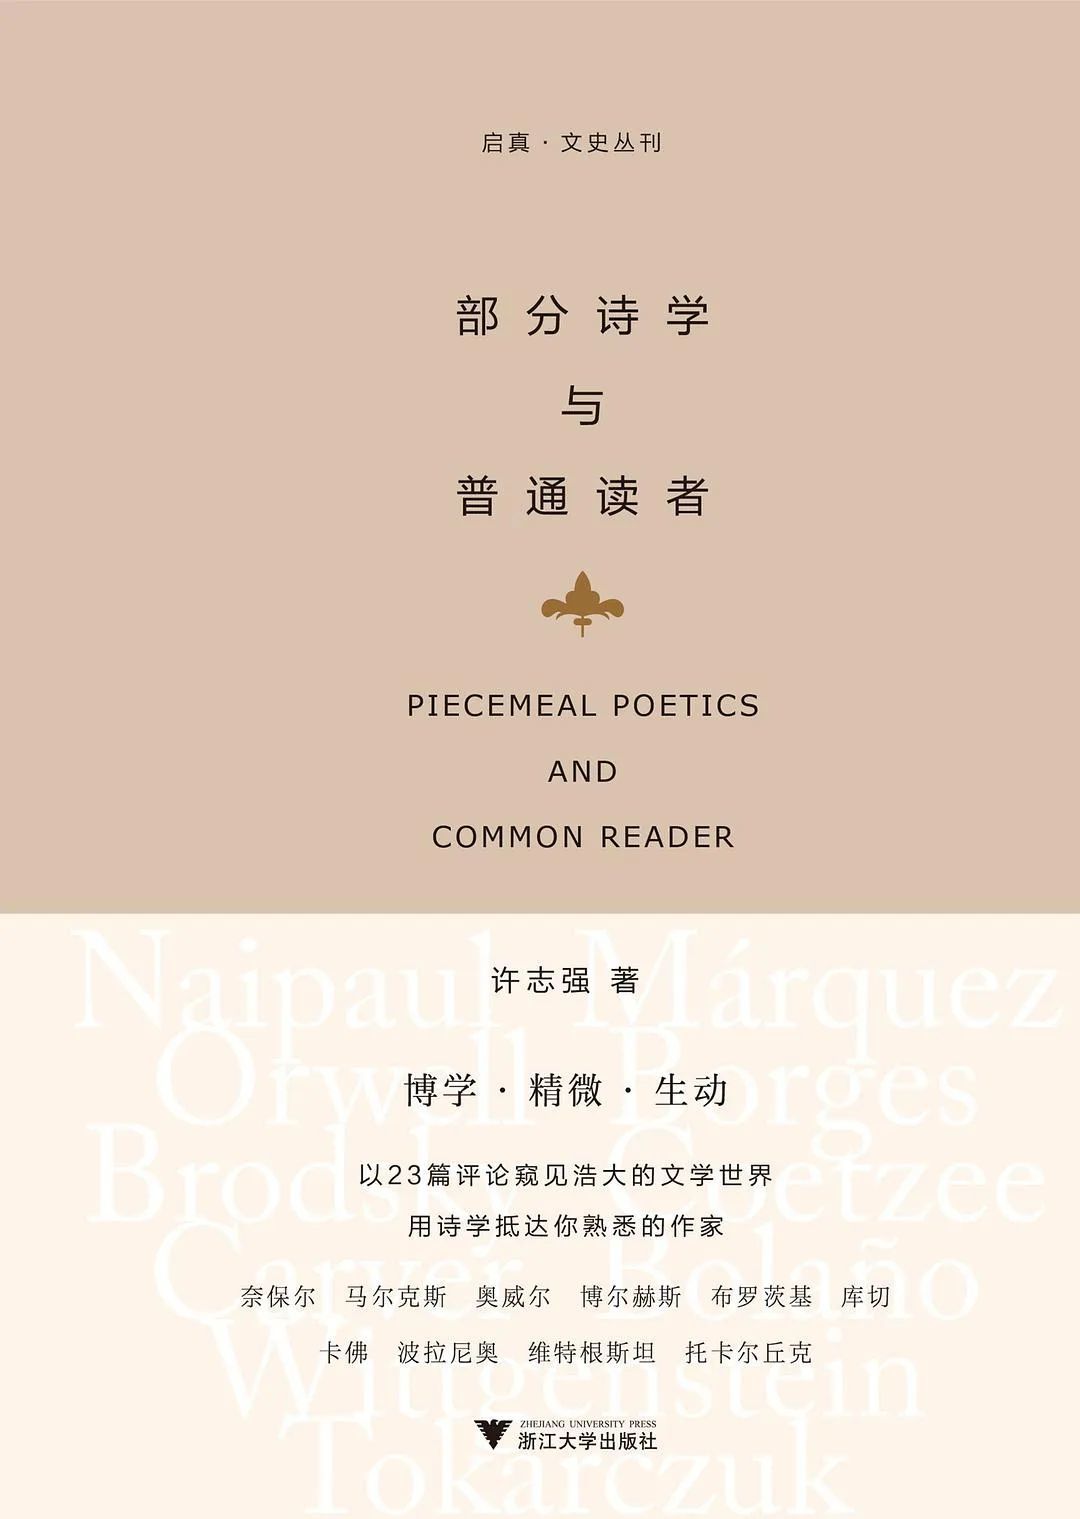 本文出处：《部分诗学与普通读者》，作者：许志强，版本：浙江大学出版社·启真馆 2021年12月